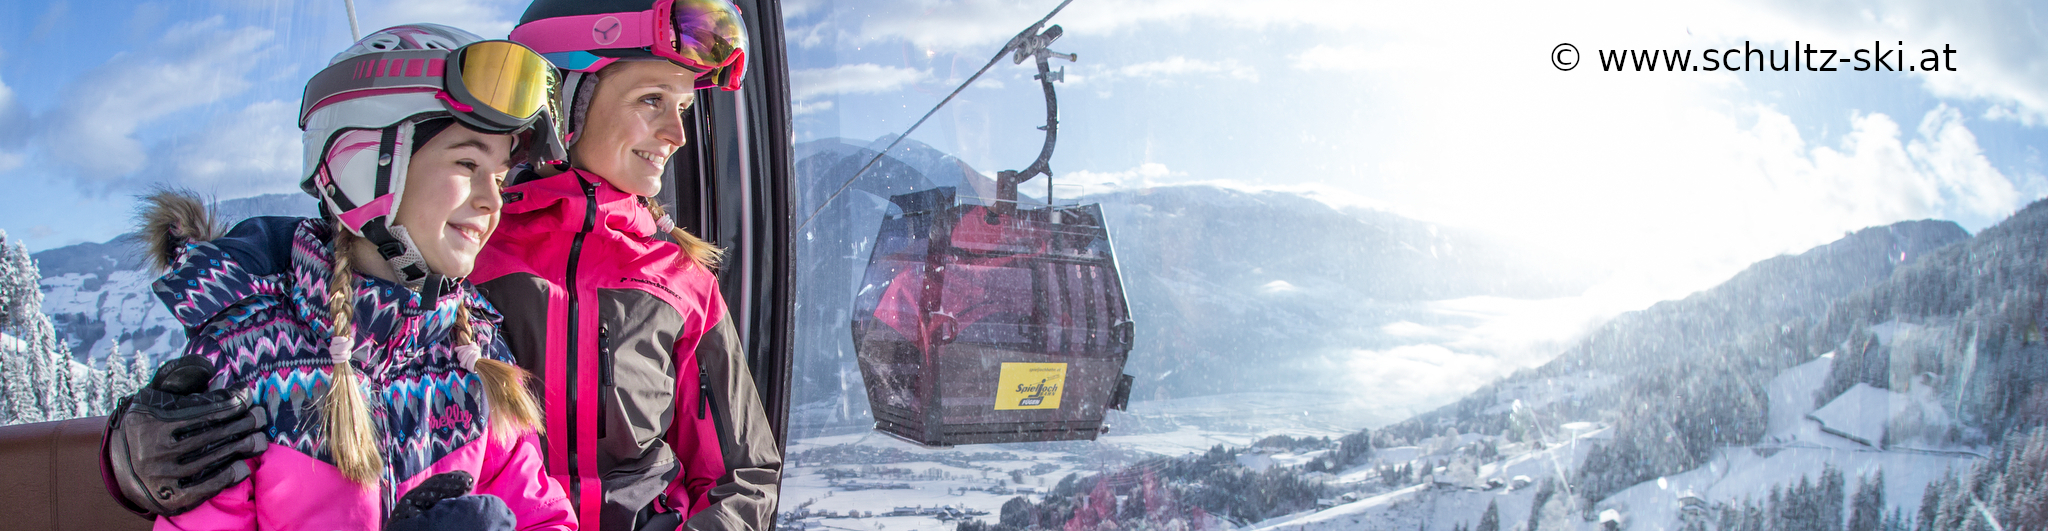 ZILLERTAL – KALTENBACH- SchneeSpaßTag – SkiTagesreise mit früher Ankunft – erster am Lift – SchneeSpaß ab 7.30Uhr 